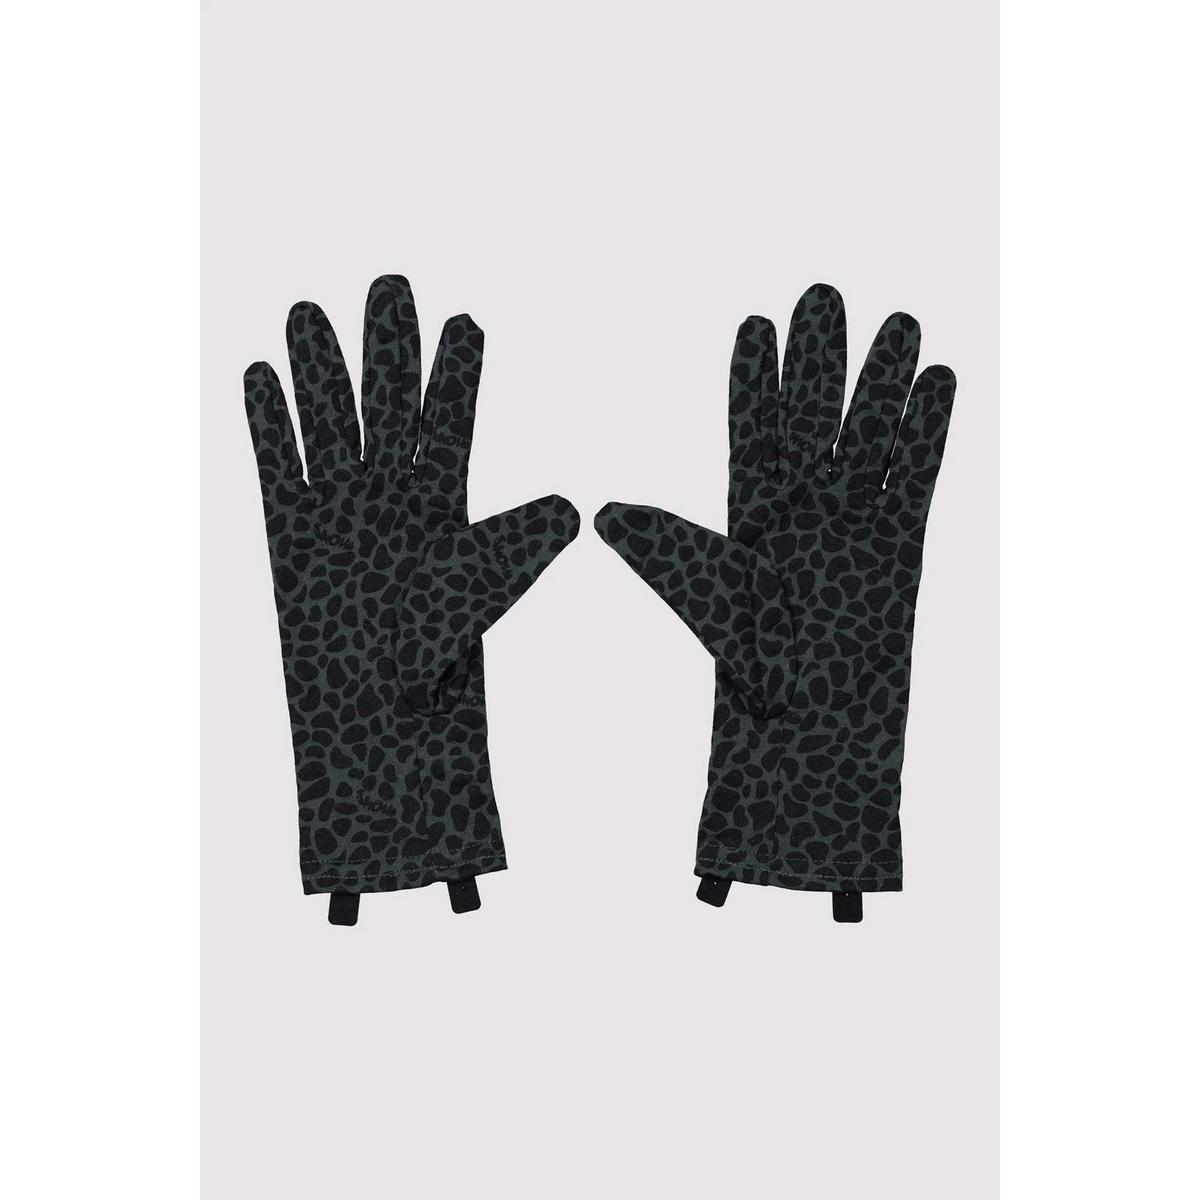 Mons Royale Volta Glove Liner - 2020 - Snow Leopard